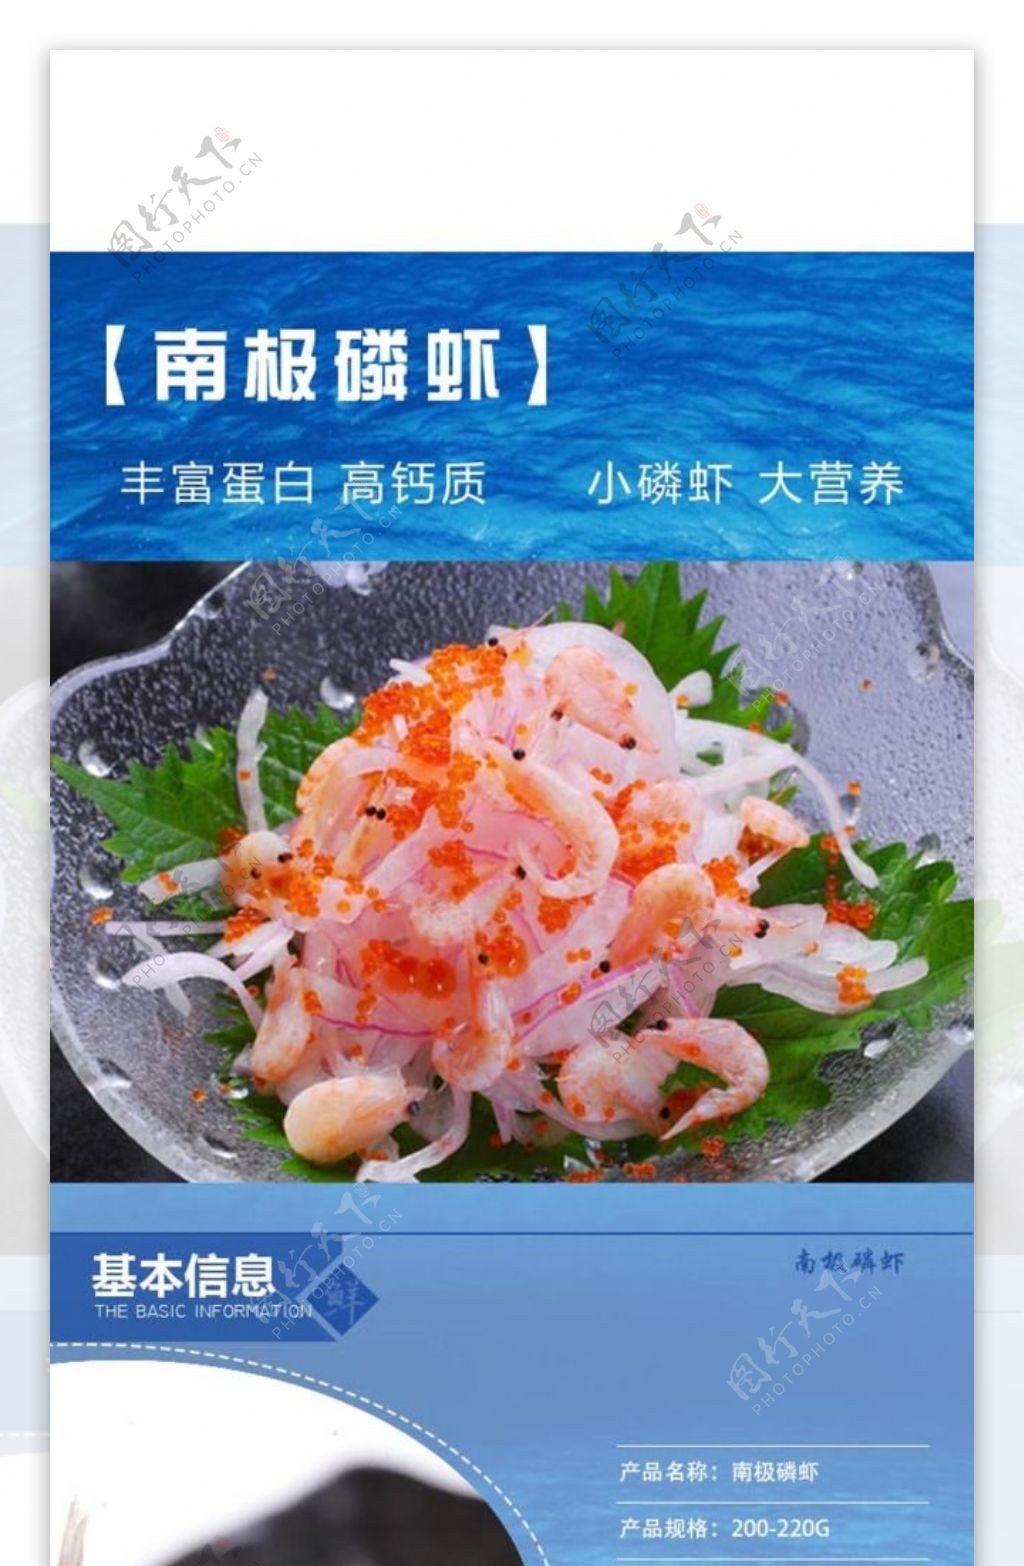 鲜虾宝贝描述详情页设计图片